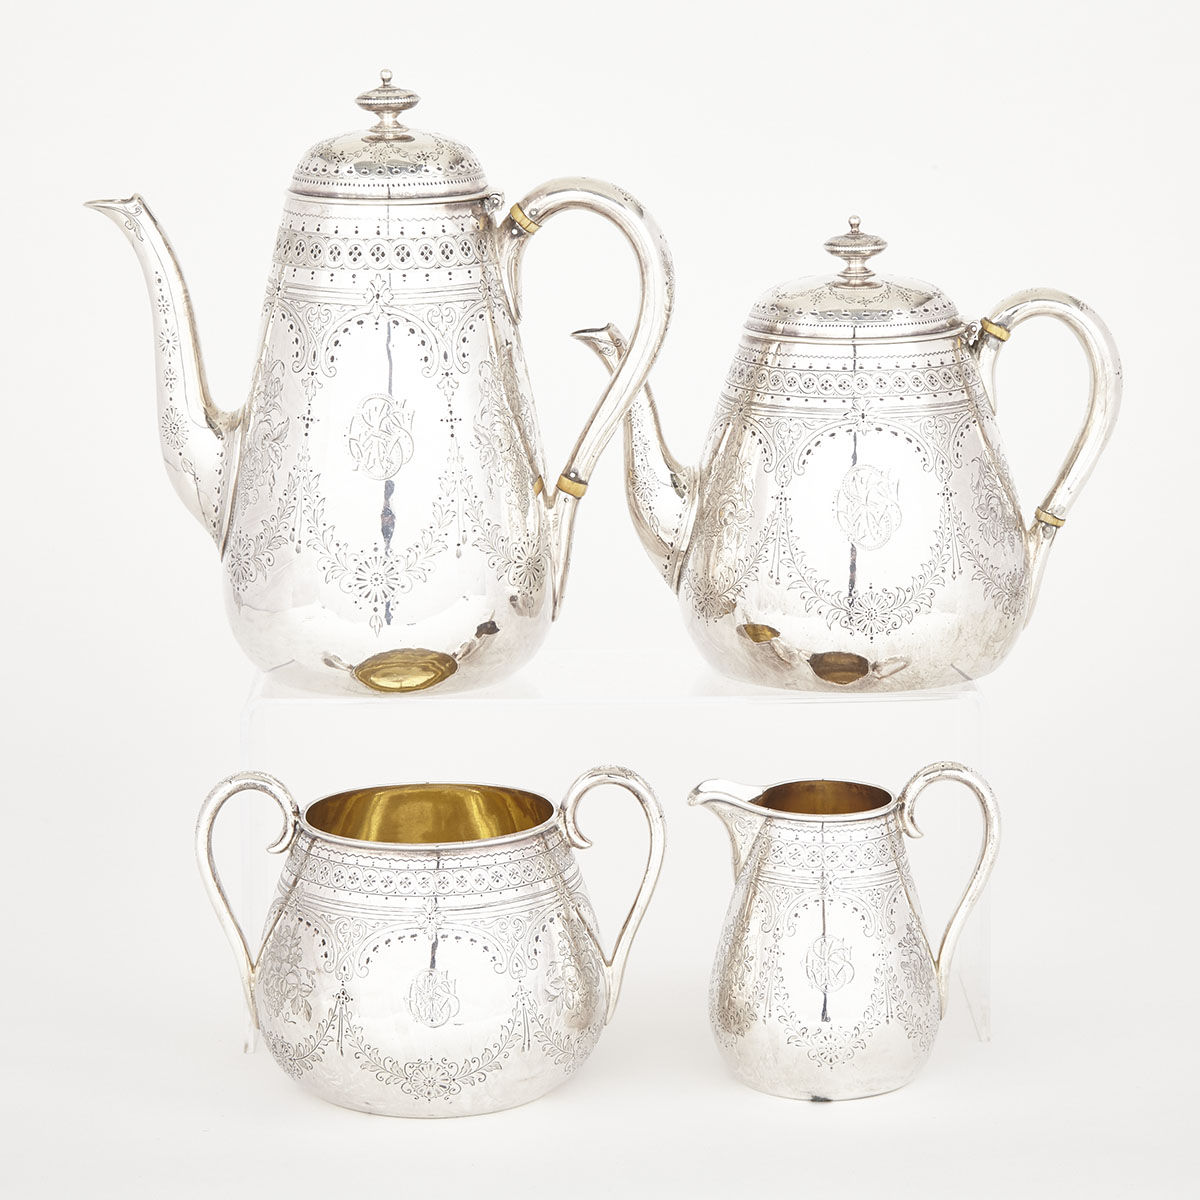 Victorian Silver Tea and Coffee Service, Edward & John Barnard, London, 1845